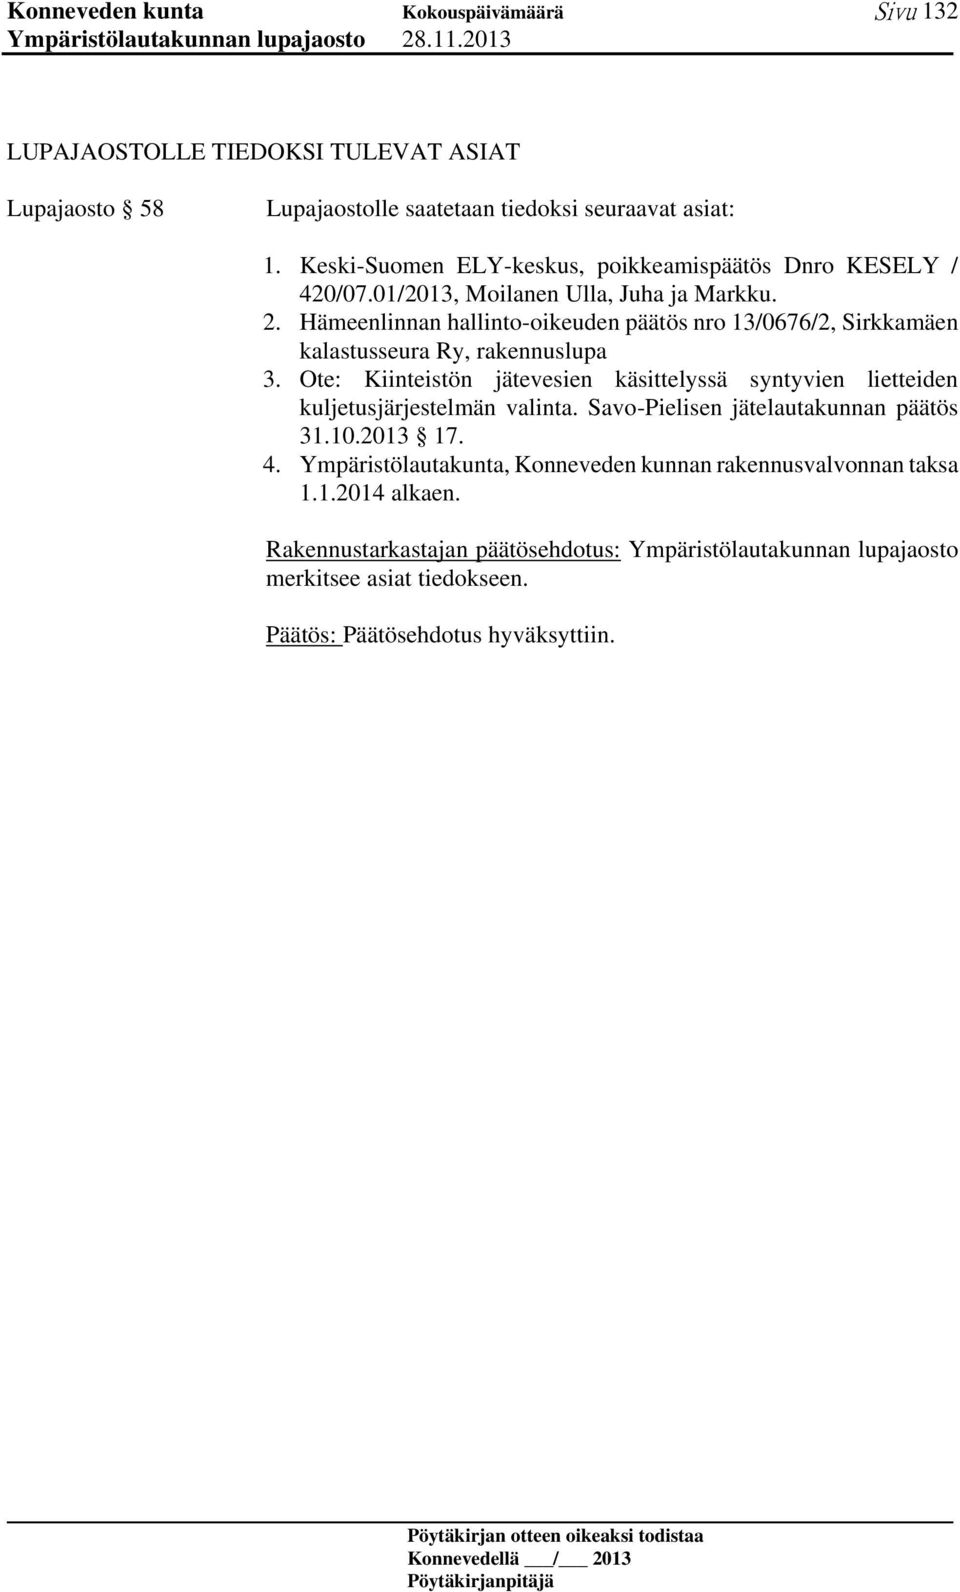 Hämeenlinnan hallinto-oikeuden päätös nro 13/0676/2, Sirkkamäen kalastusseura Ry, rakennuslupa 3.